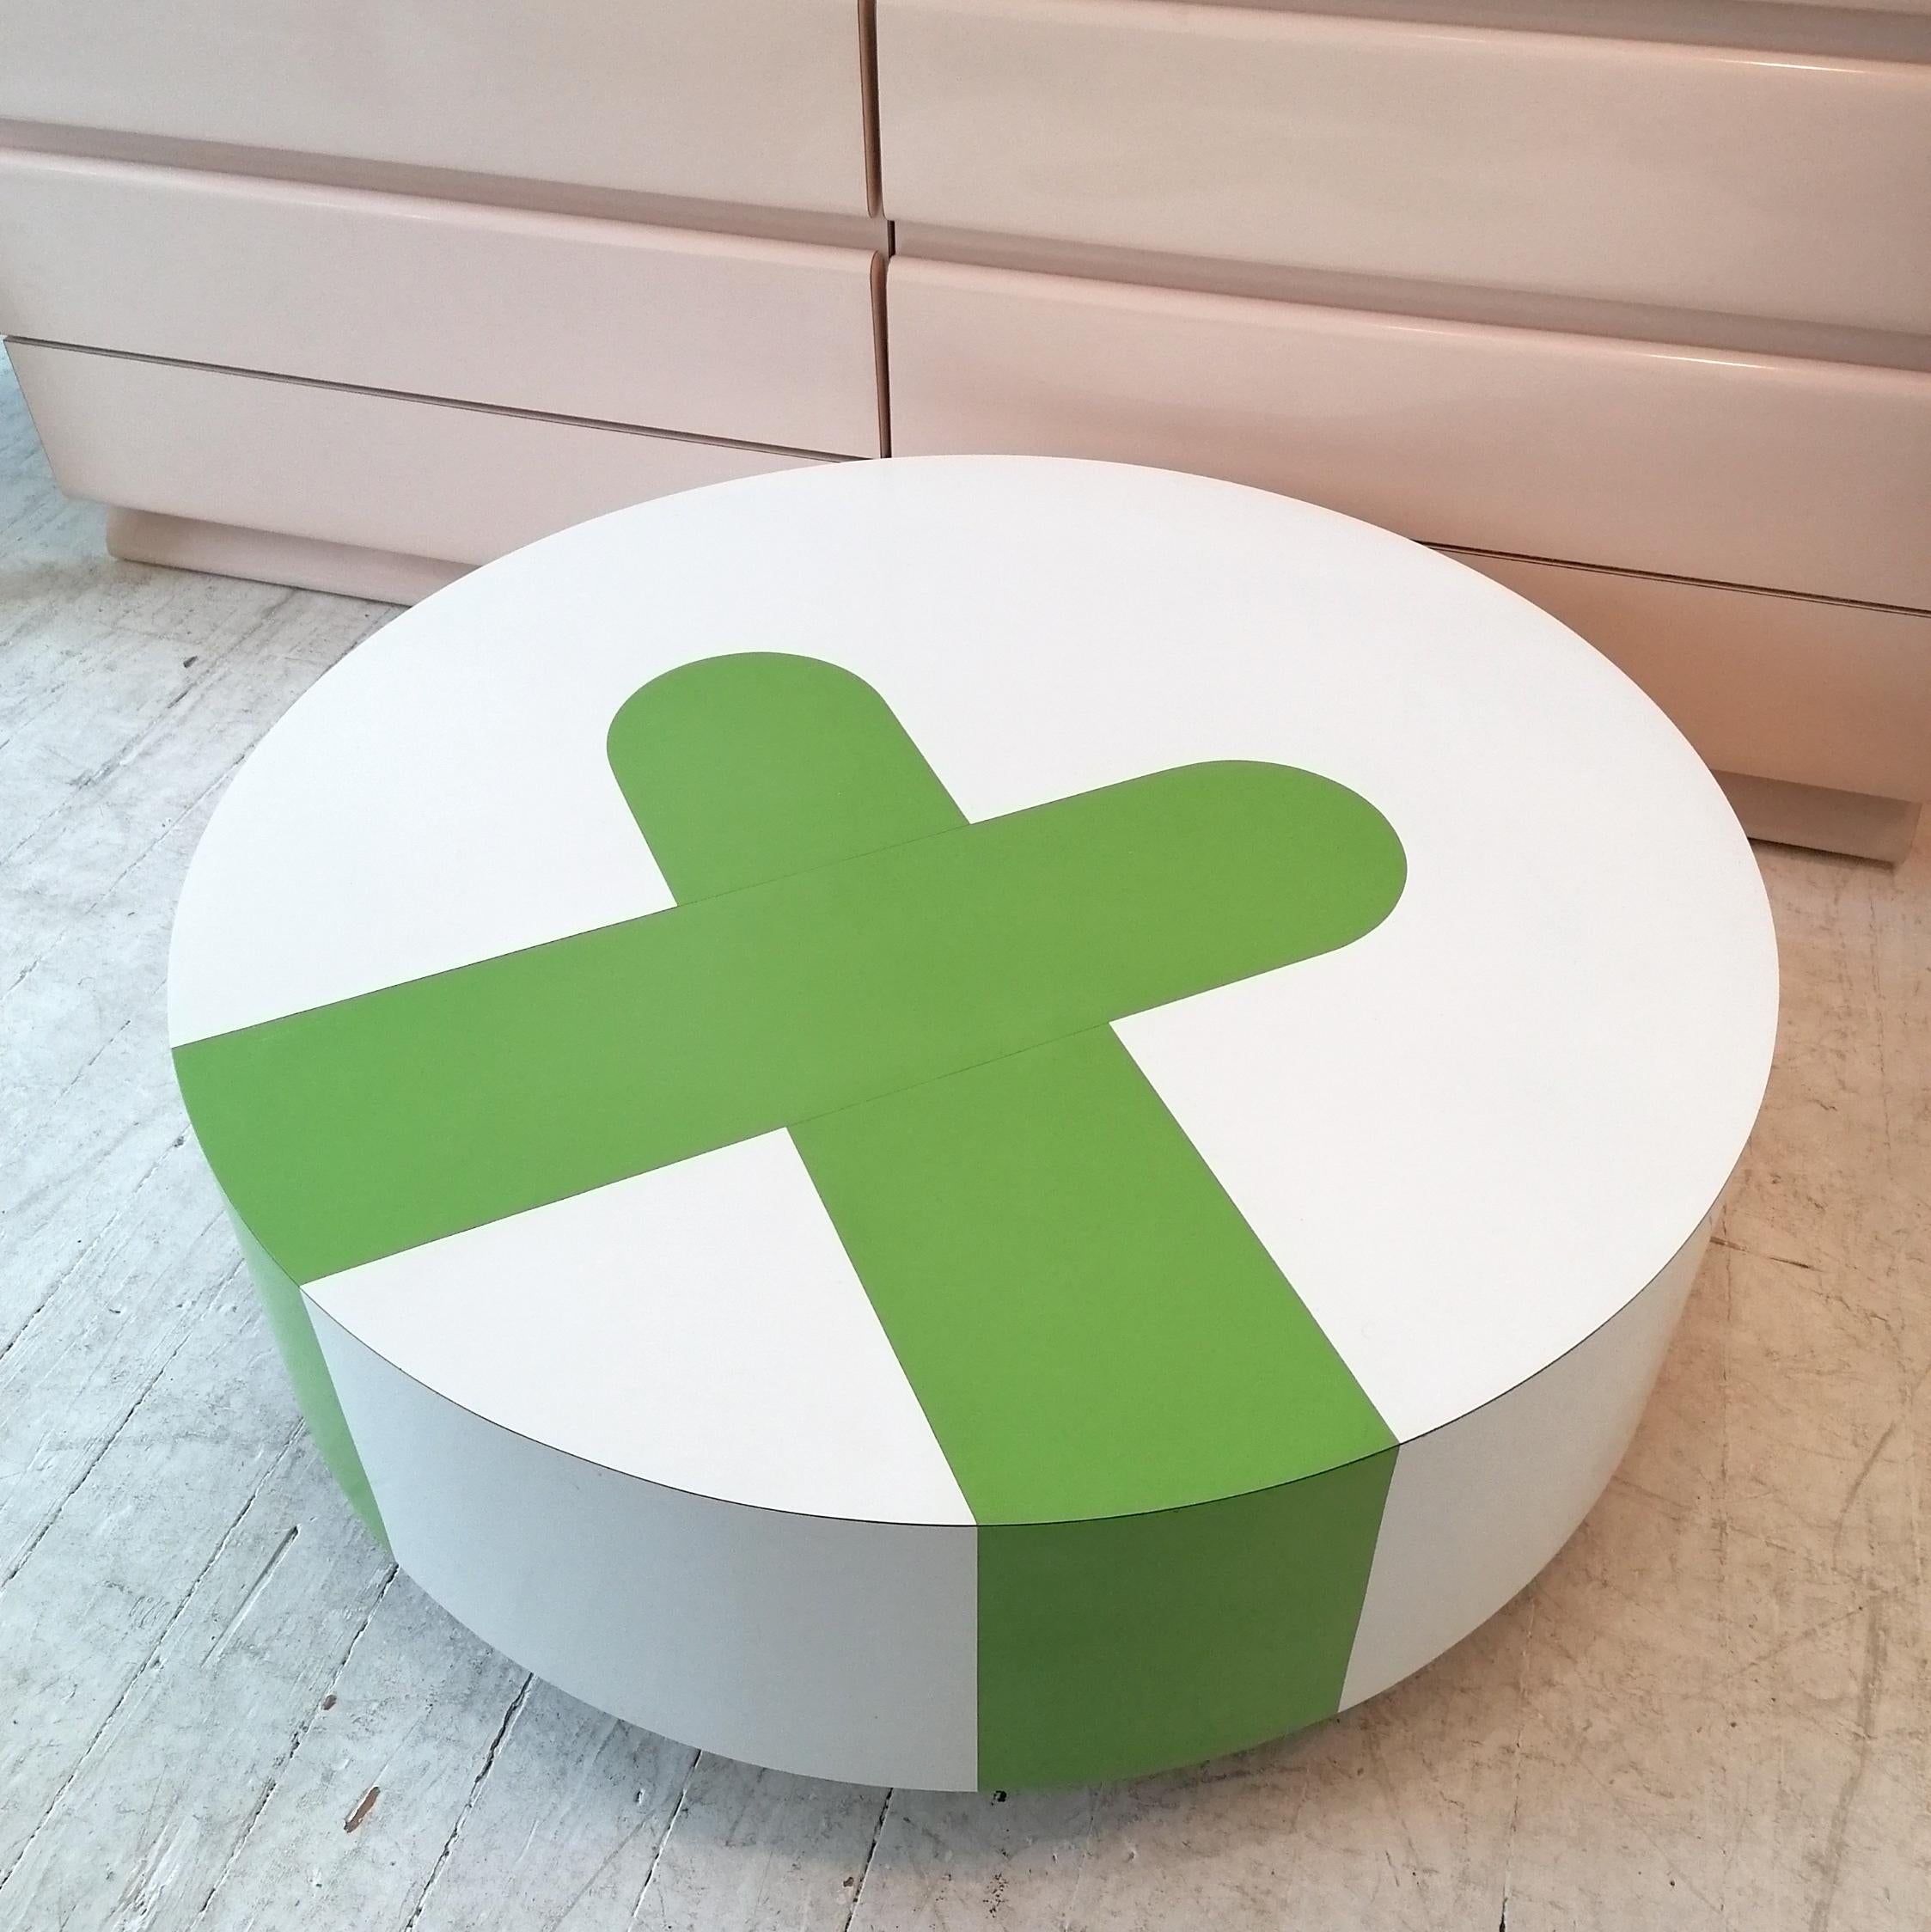 Grande table basse postmoderne américaine en stratifié blanc et vert, avec un design en croix. Se déplace facilement sur des roulettes. En très bon état.


Dimensions : diamètre 96 cm, hauteur 35 cm.